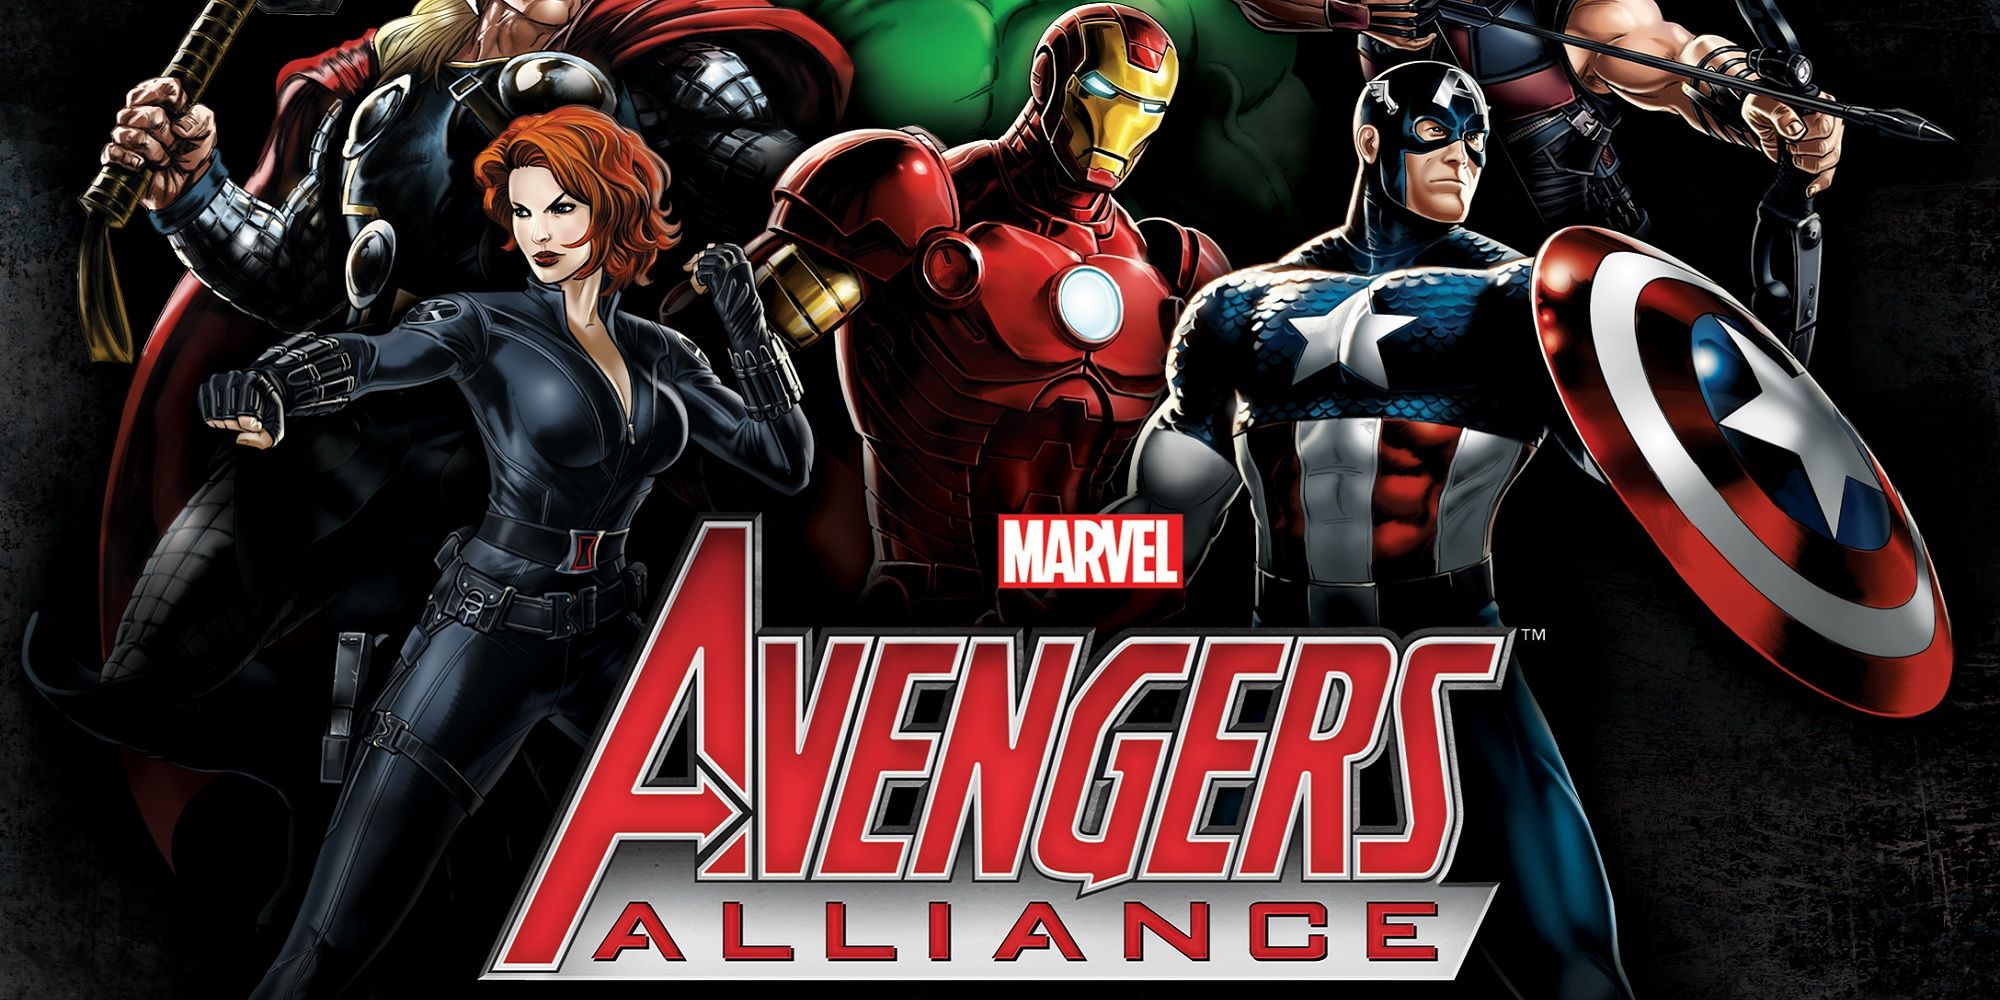 Marvel Avengers Alliance artwork